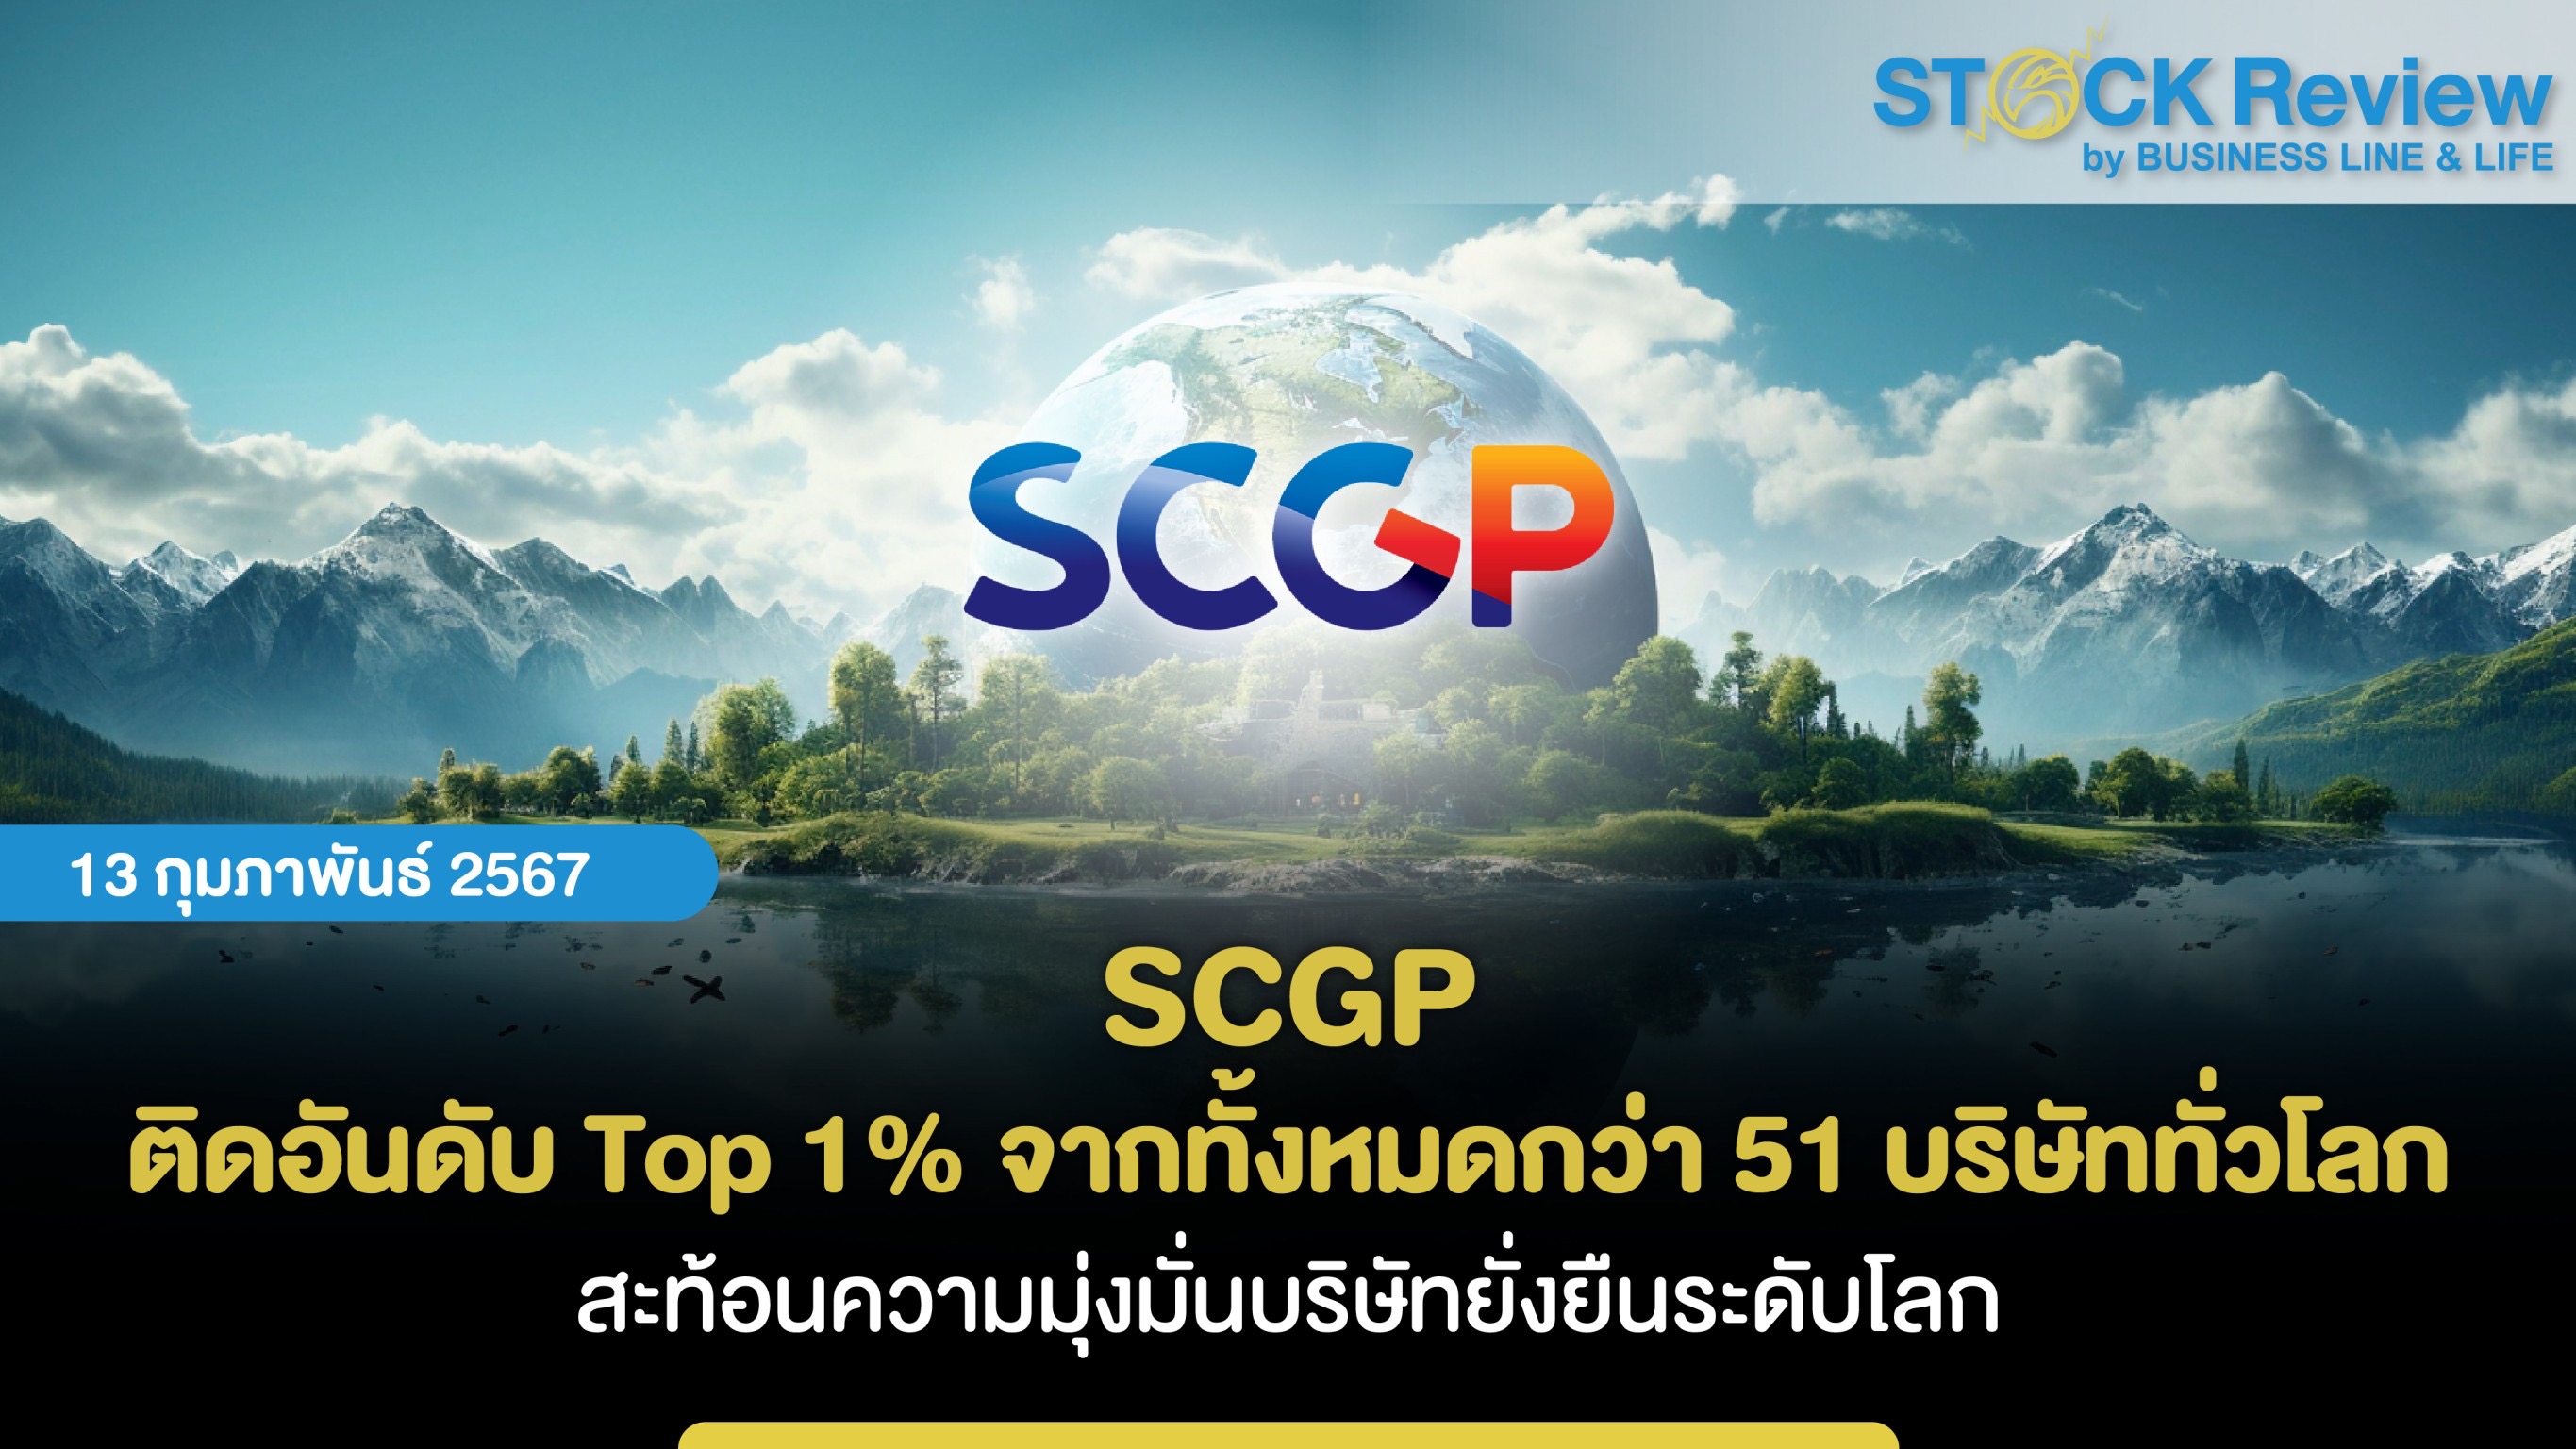 SCGP ติดอันดับ Top 1% จากทั้งหมดกว่า 51 บริษัททั่วโลก  สะท้อนความมุ่งมั่นบริษัทยั่งยืนระดับโลก